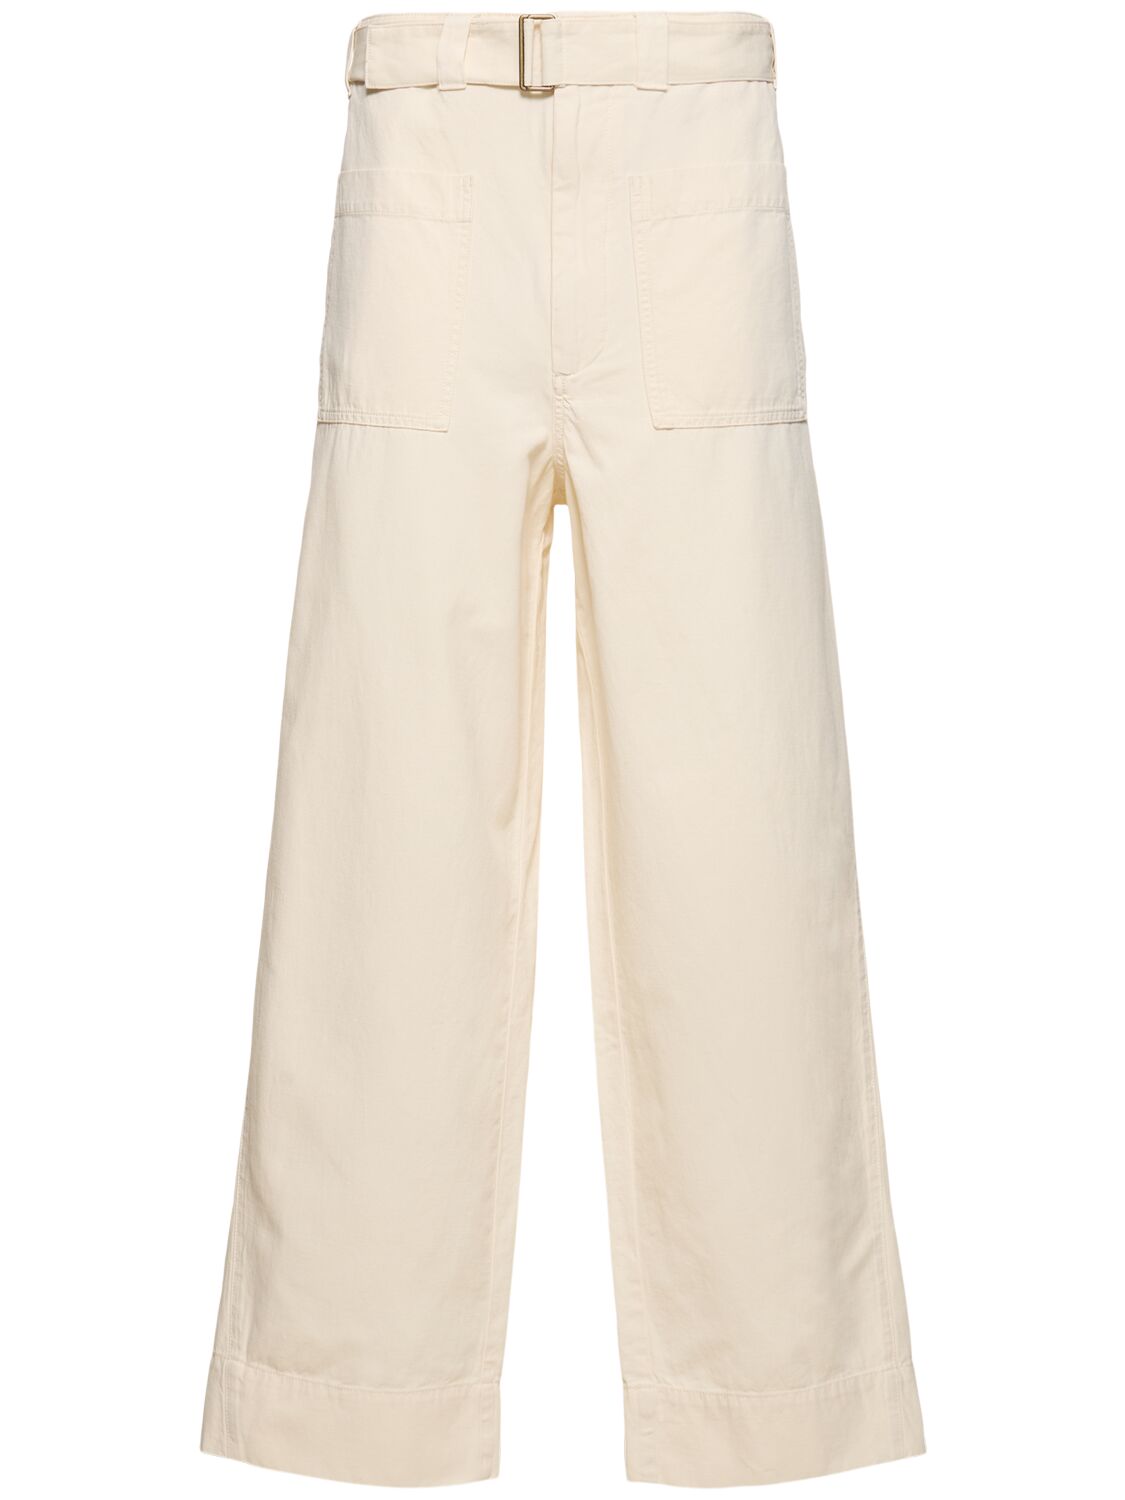 Image of Vagabond Cotton & Linen Wide Pants